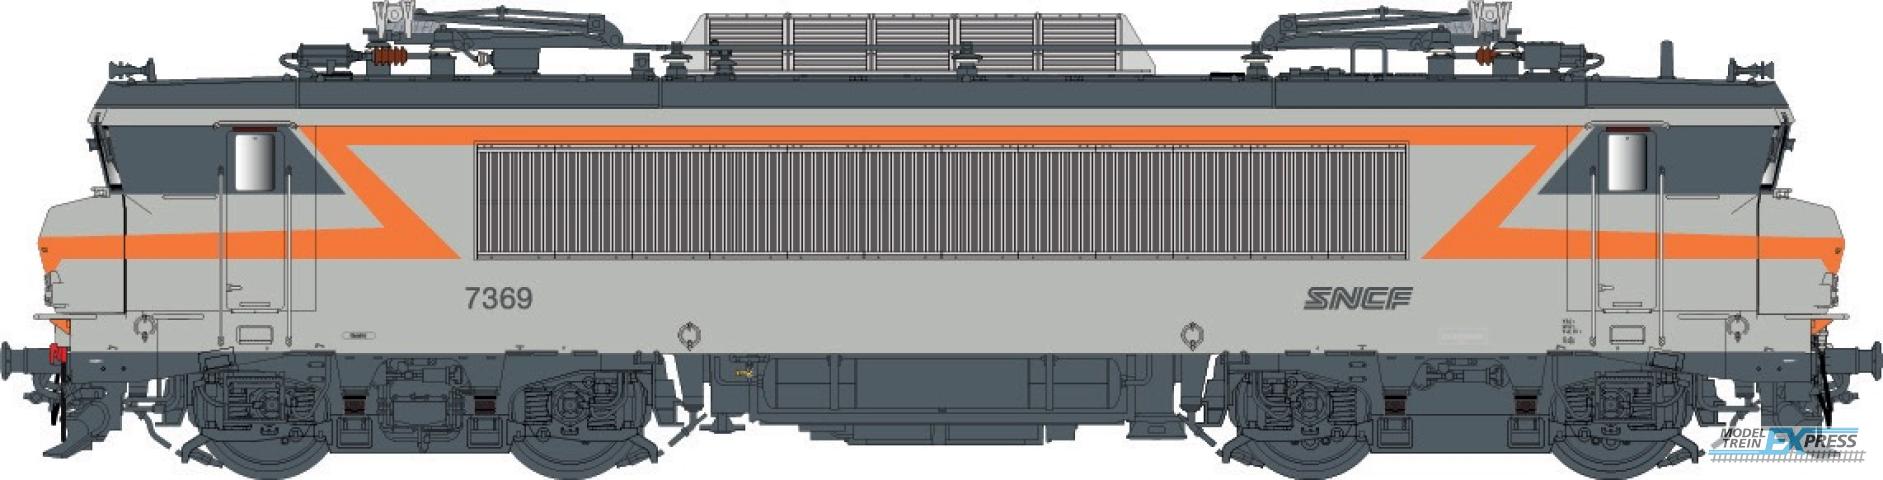 LS Models 11704S BB 7200, grijs/oranje, noedles logo, front nummer, grote cabine  /  Ep. V  /  SNCF  /  HO  /  AC SOUND  /  1 P.